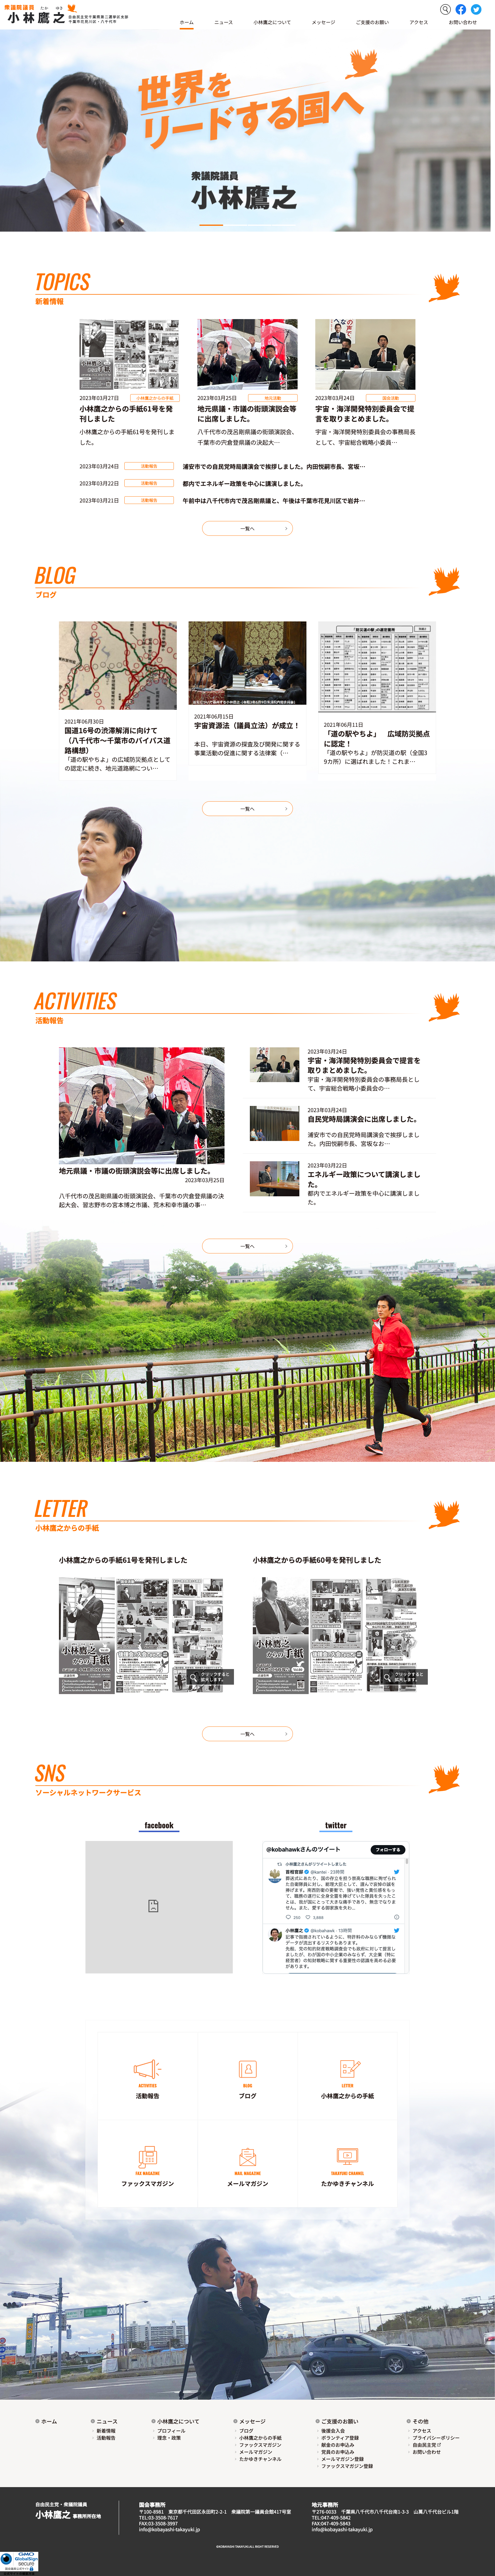 自由民主党千葉県第二選挙区支部長  小林鷹之オフィシャルサイト 様 デザインイメージ1